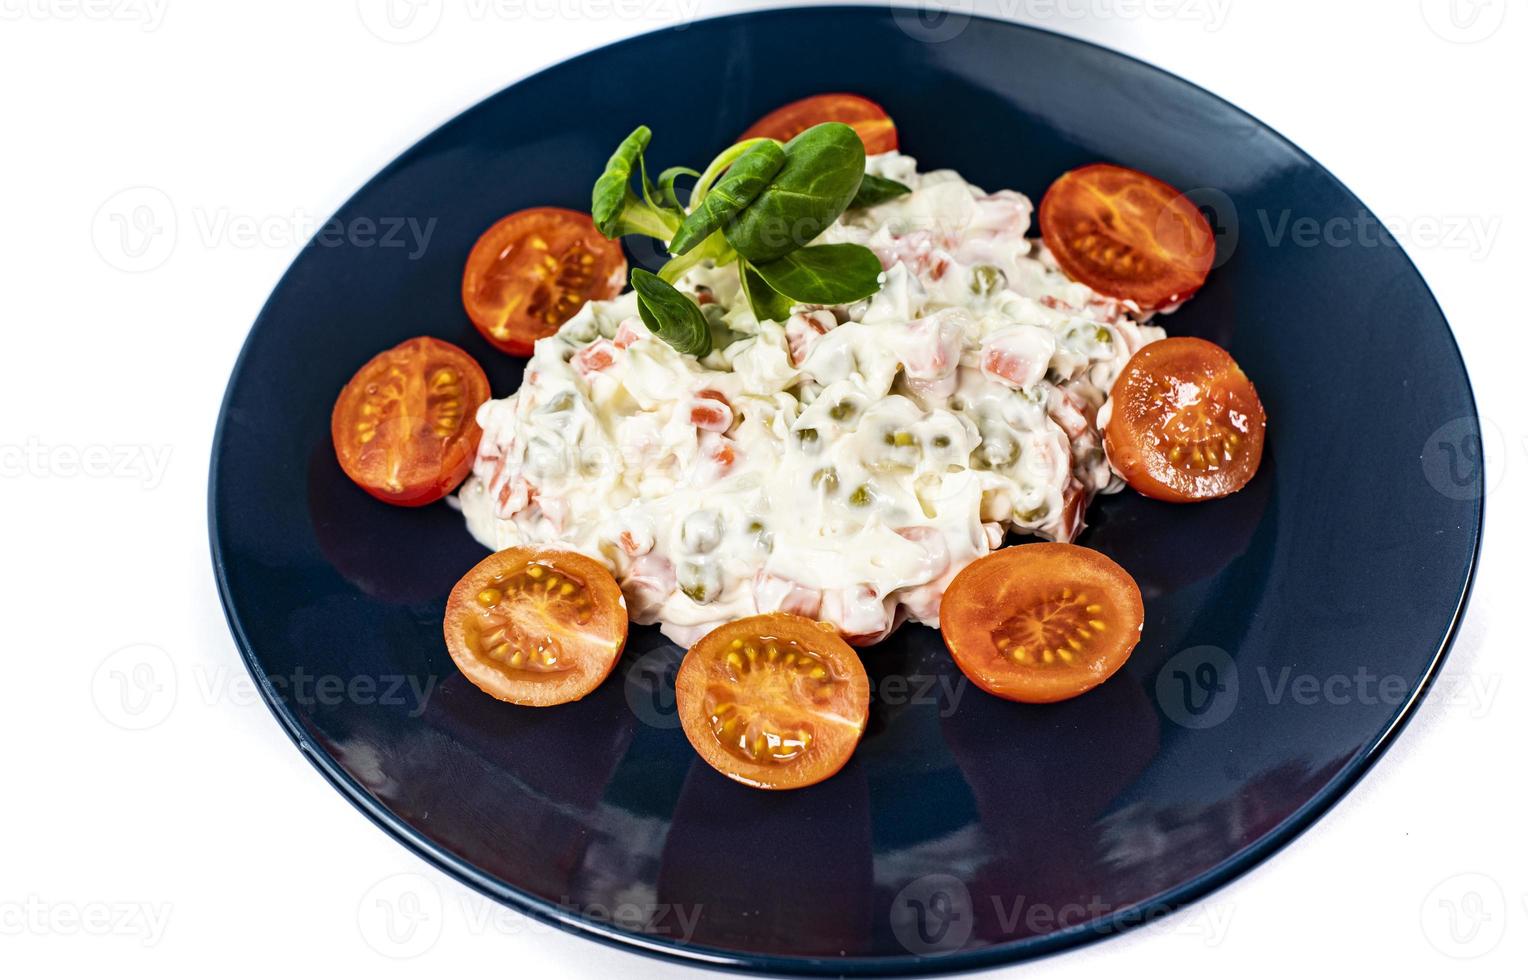 salade russe sur plaque bleue photo